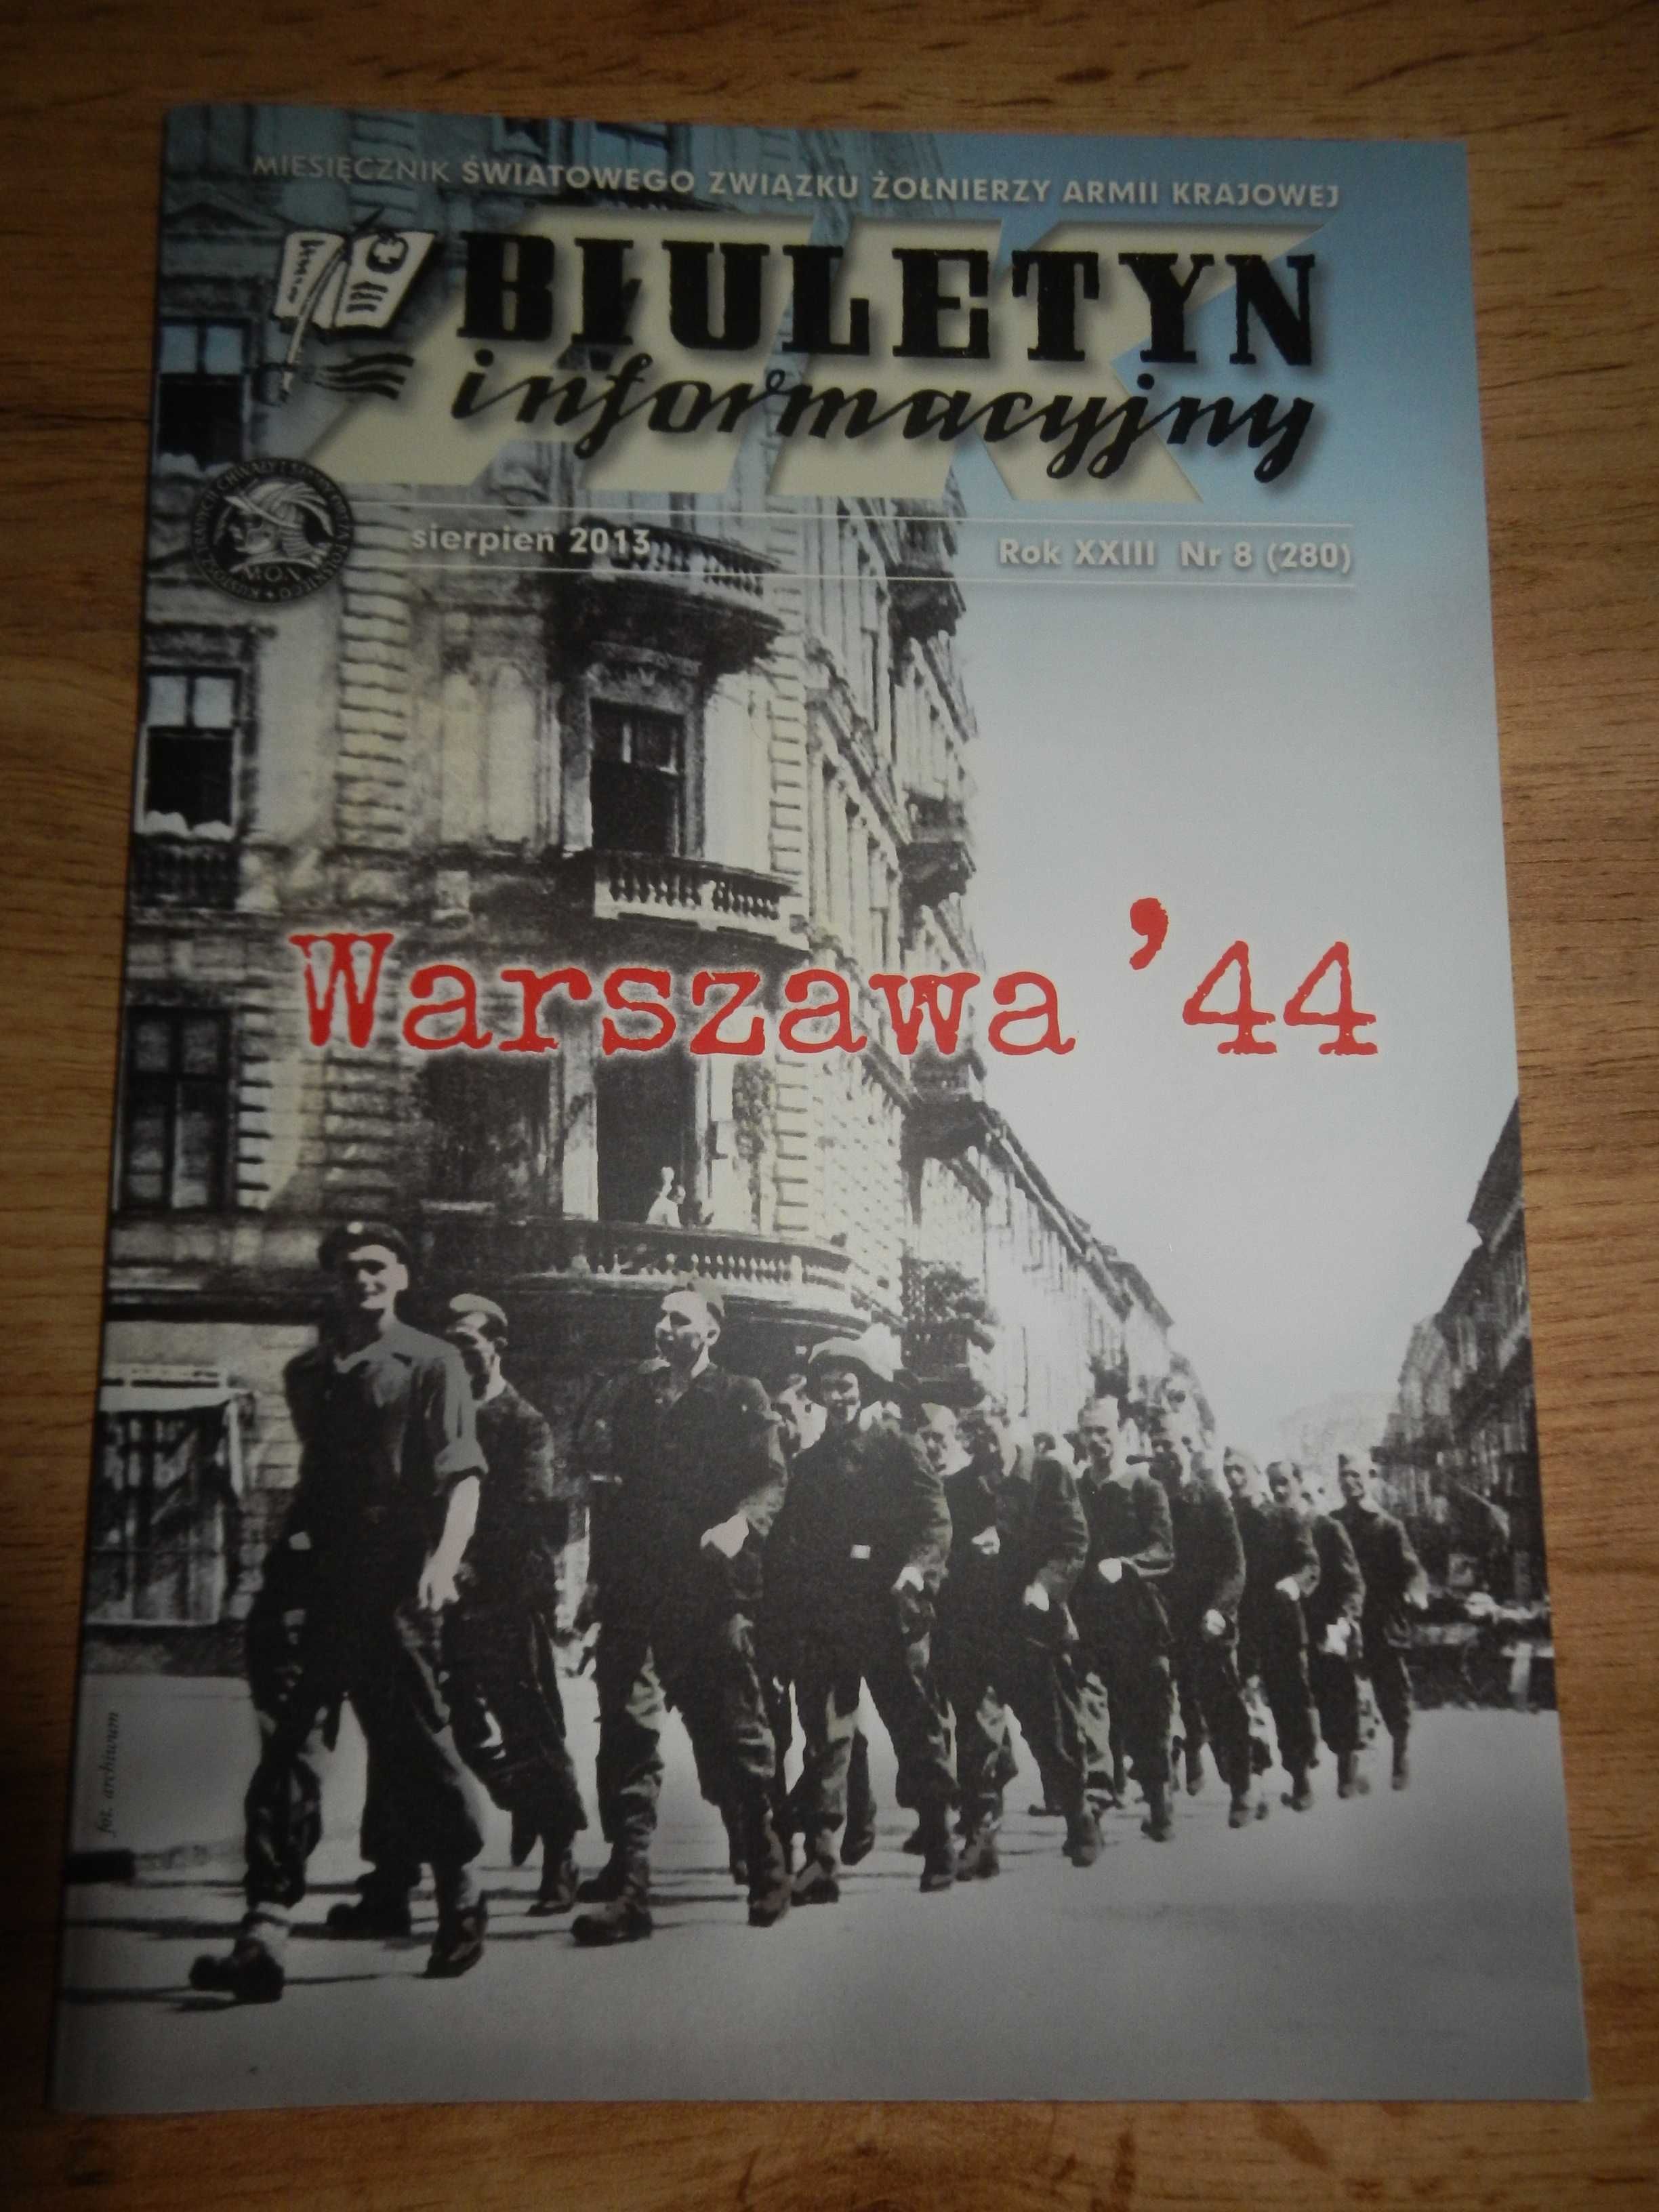 Biuletyn informacyjny Związku Żołnierzy AK 5 szt.